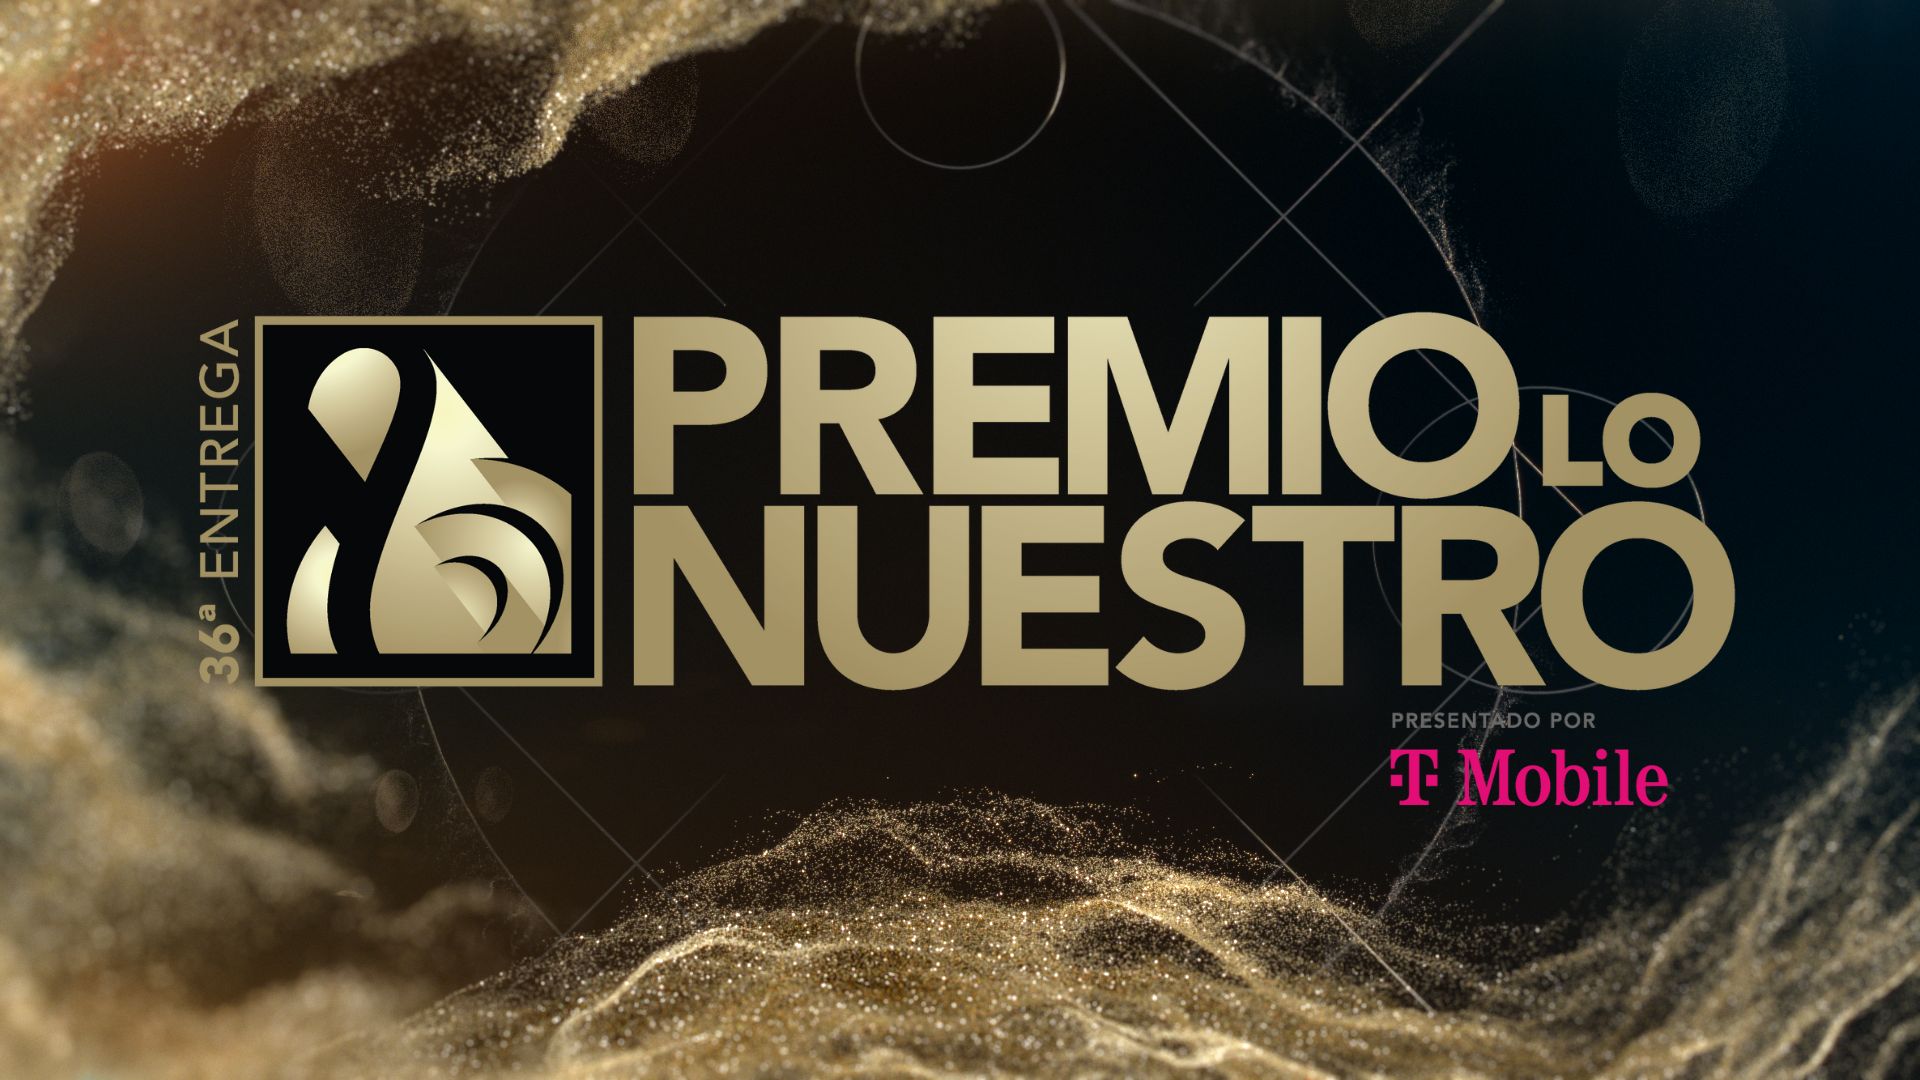 Univision Reveals PREMIO LO NUESTRO nominees Maluma, Peso Pluma, Grupo